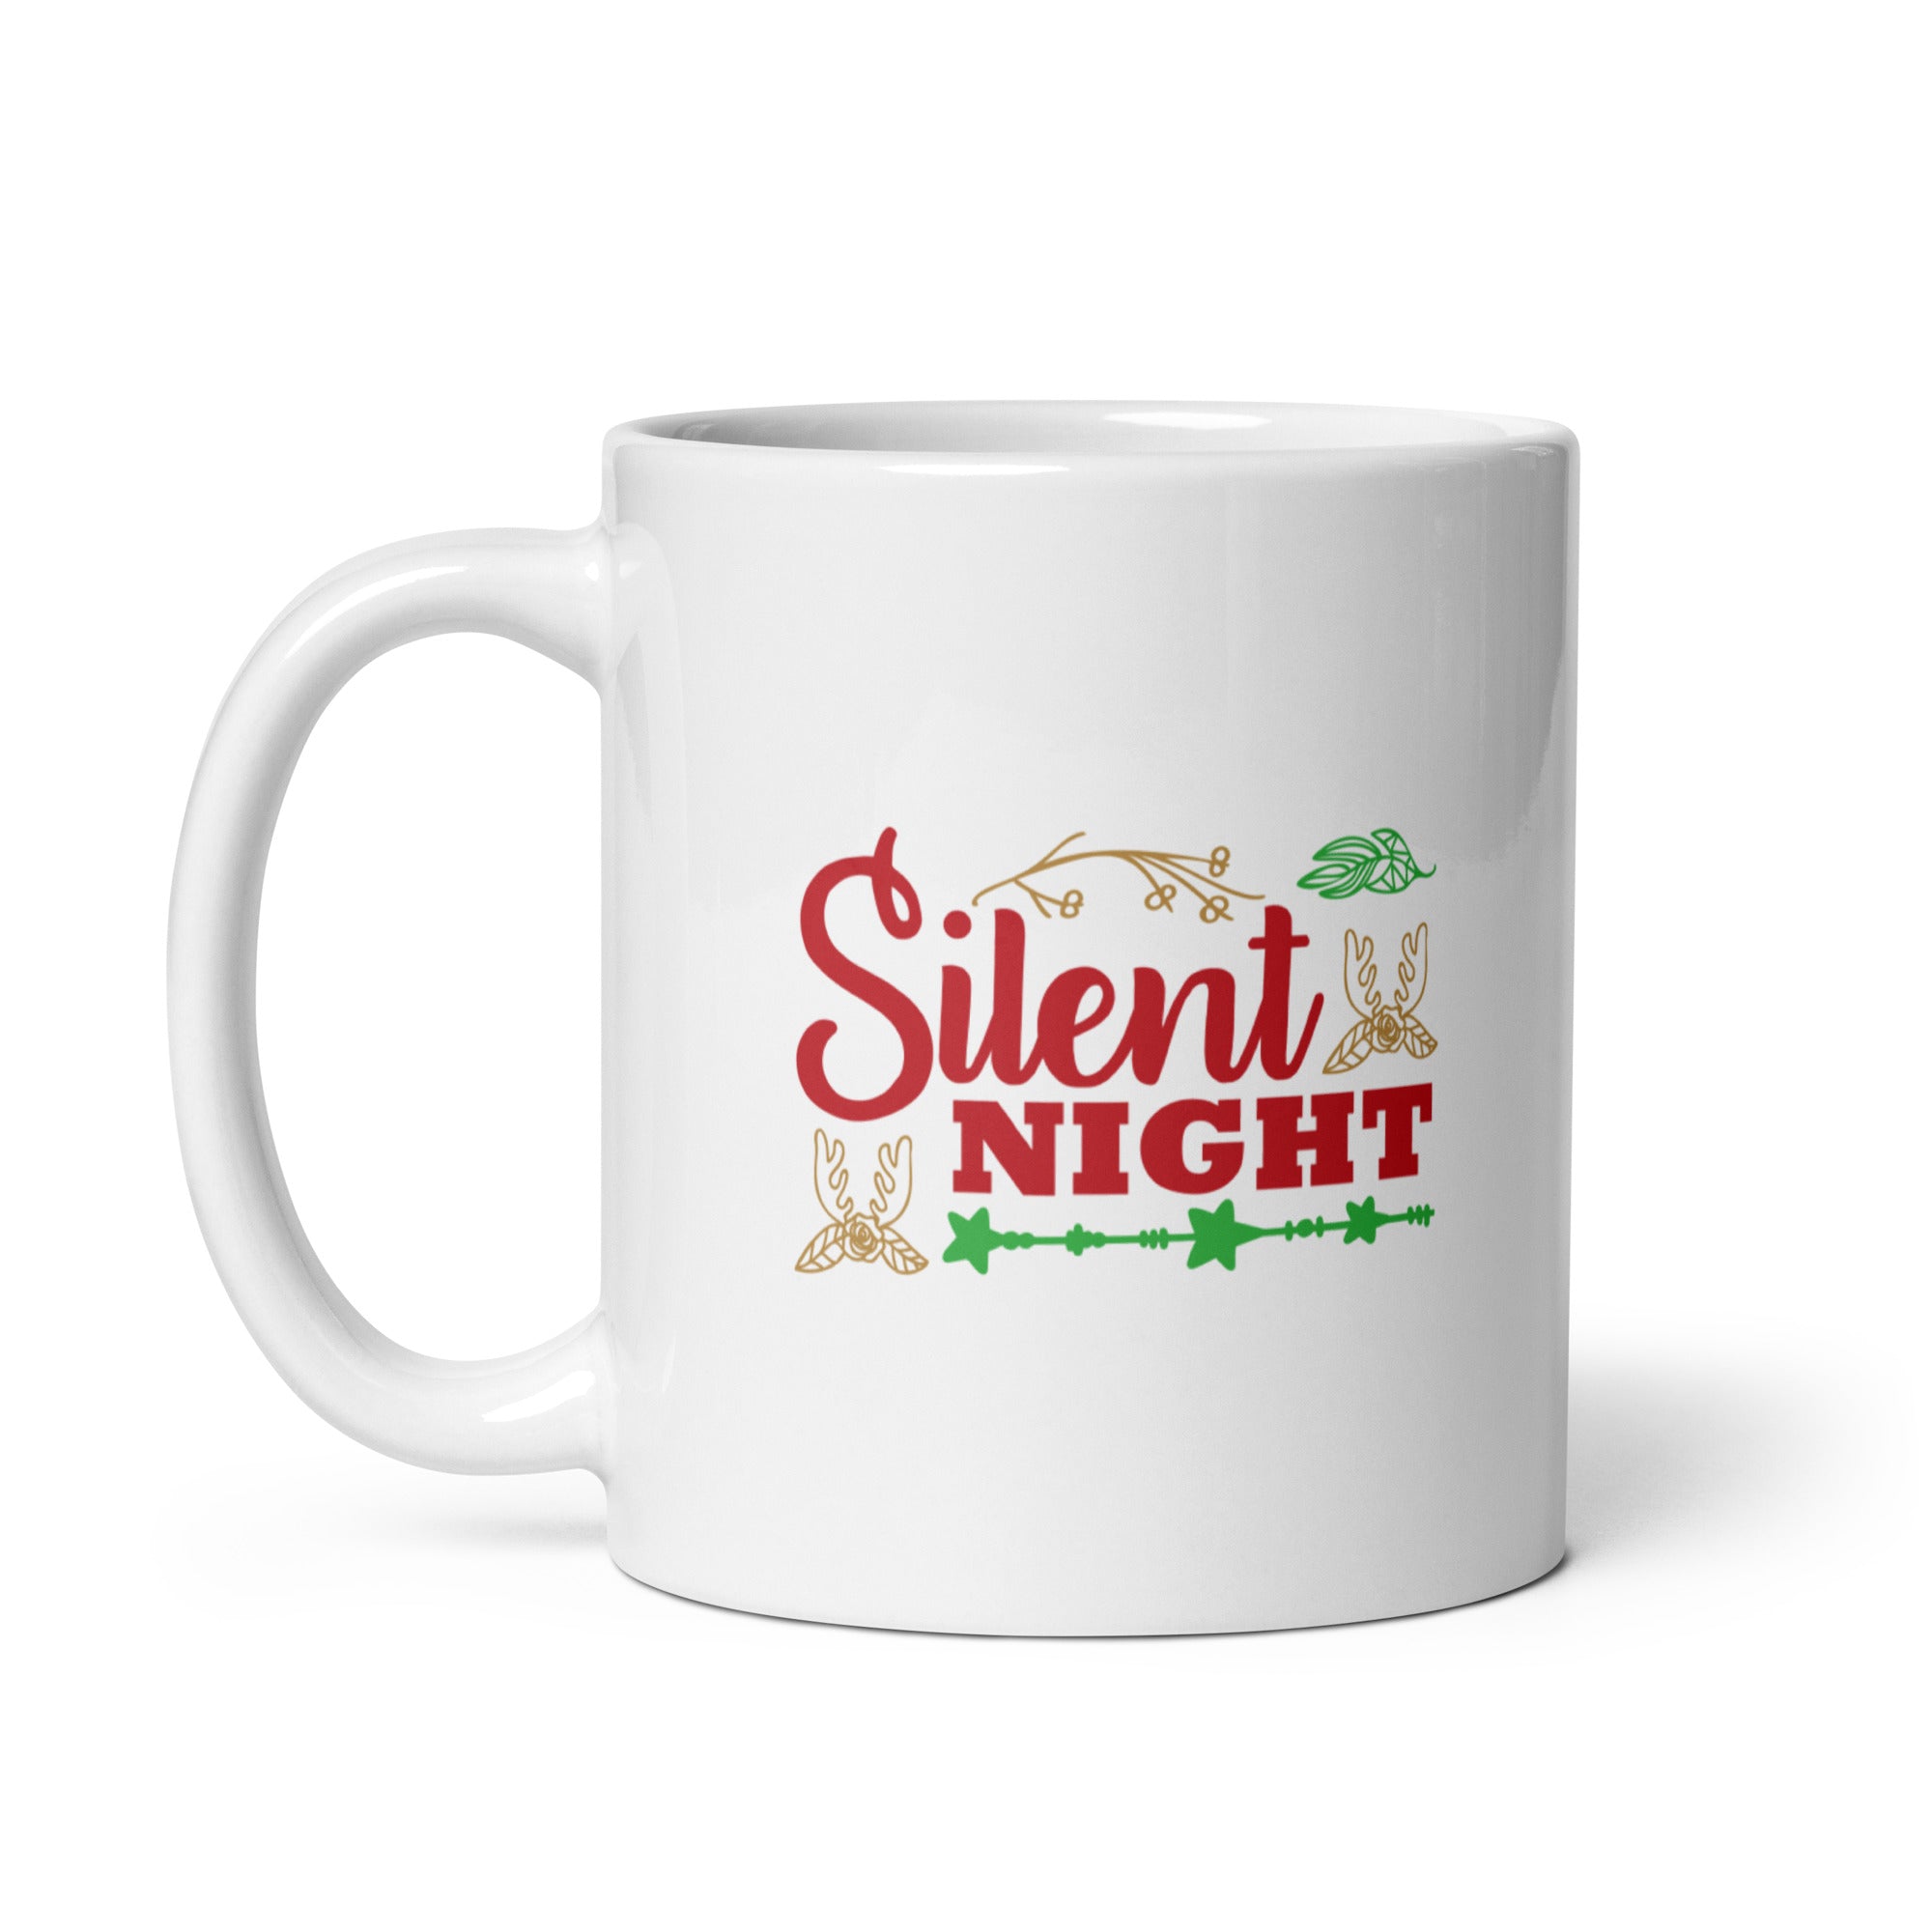 Silent Night - White glossy mug